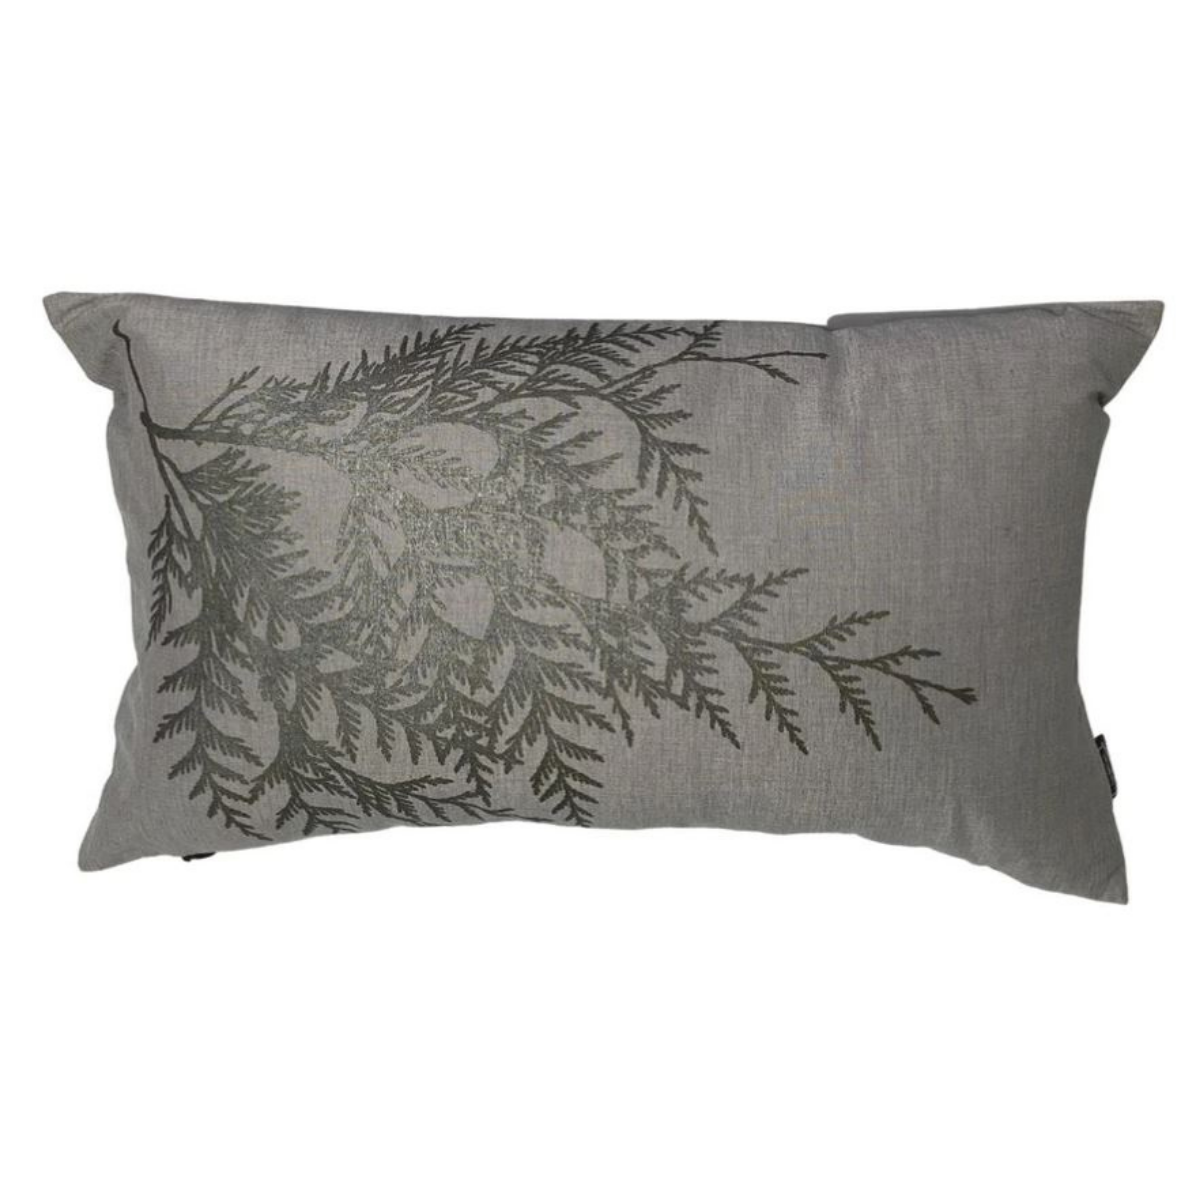 Hemp Pillow Cover 12x18 - Cedar by Totem Design House (Light Grey)-Pillow Case-great gift west coast spirit